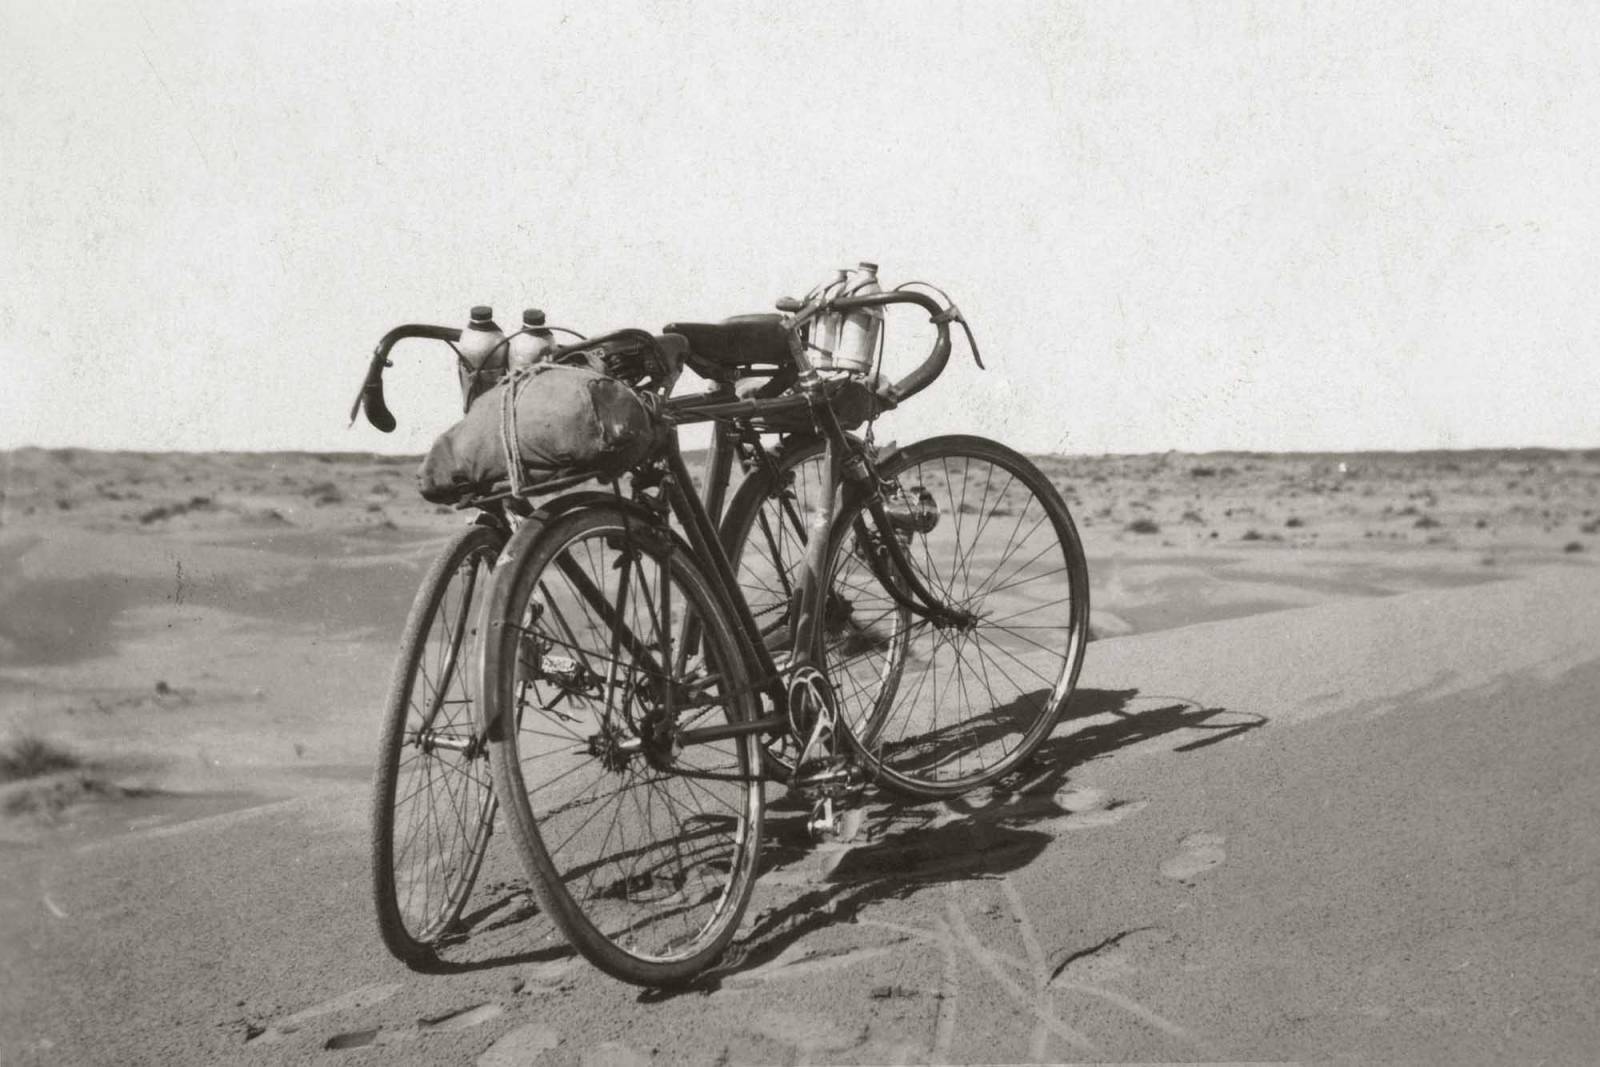 FOTO "BICICLETTE" (Avventure ciclistiche nel deserto della Libia, ca. 1930).